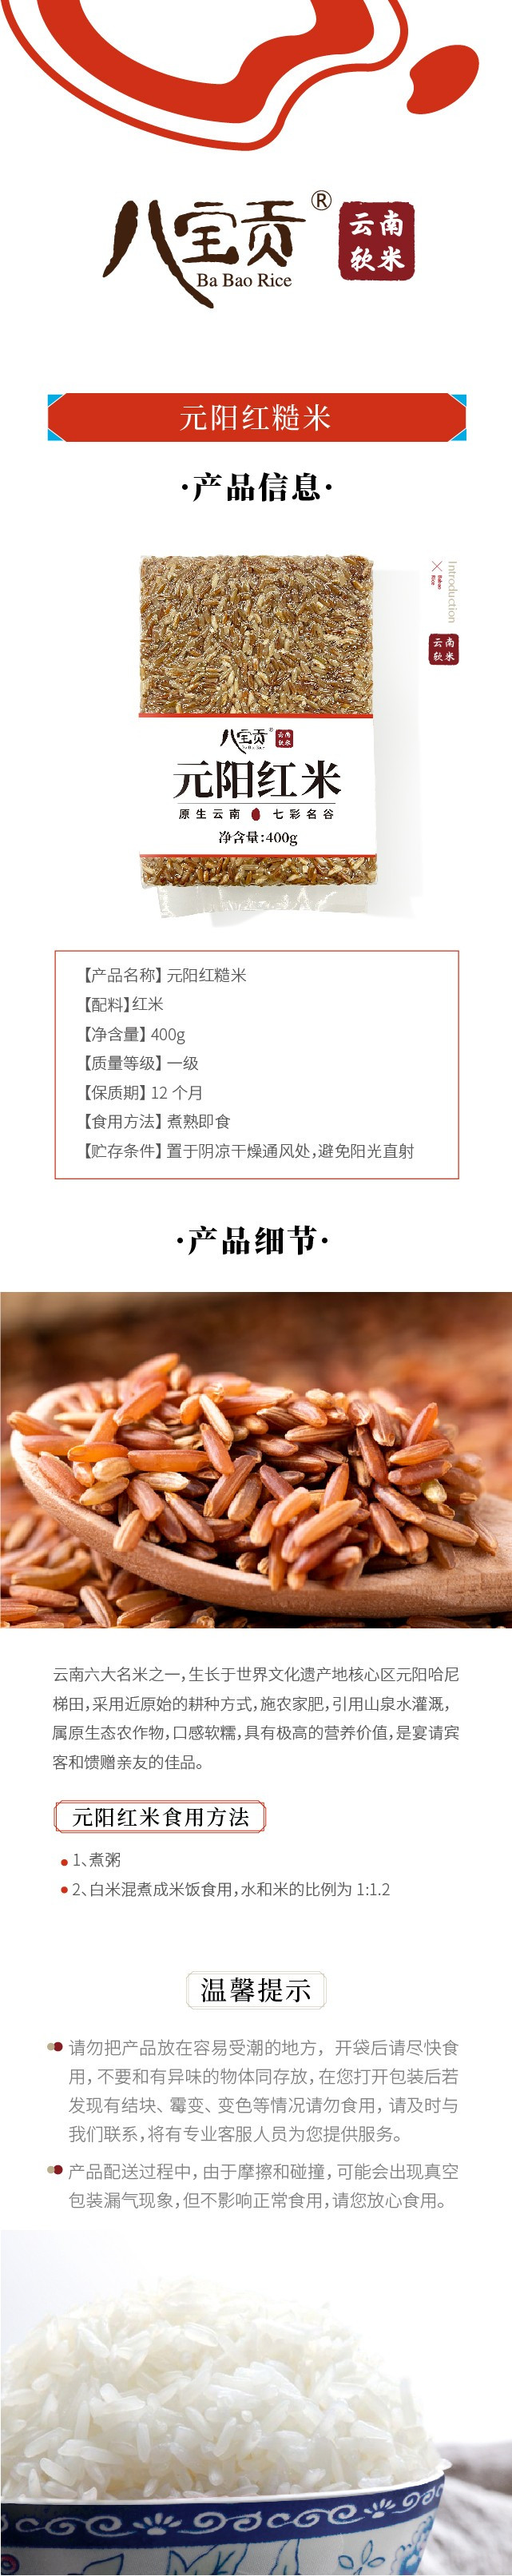 八宝贡 元阳红米 云南六大名米之一 糙米粗粮大米